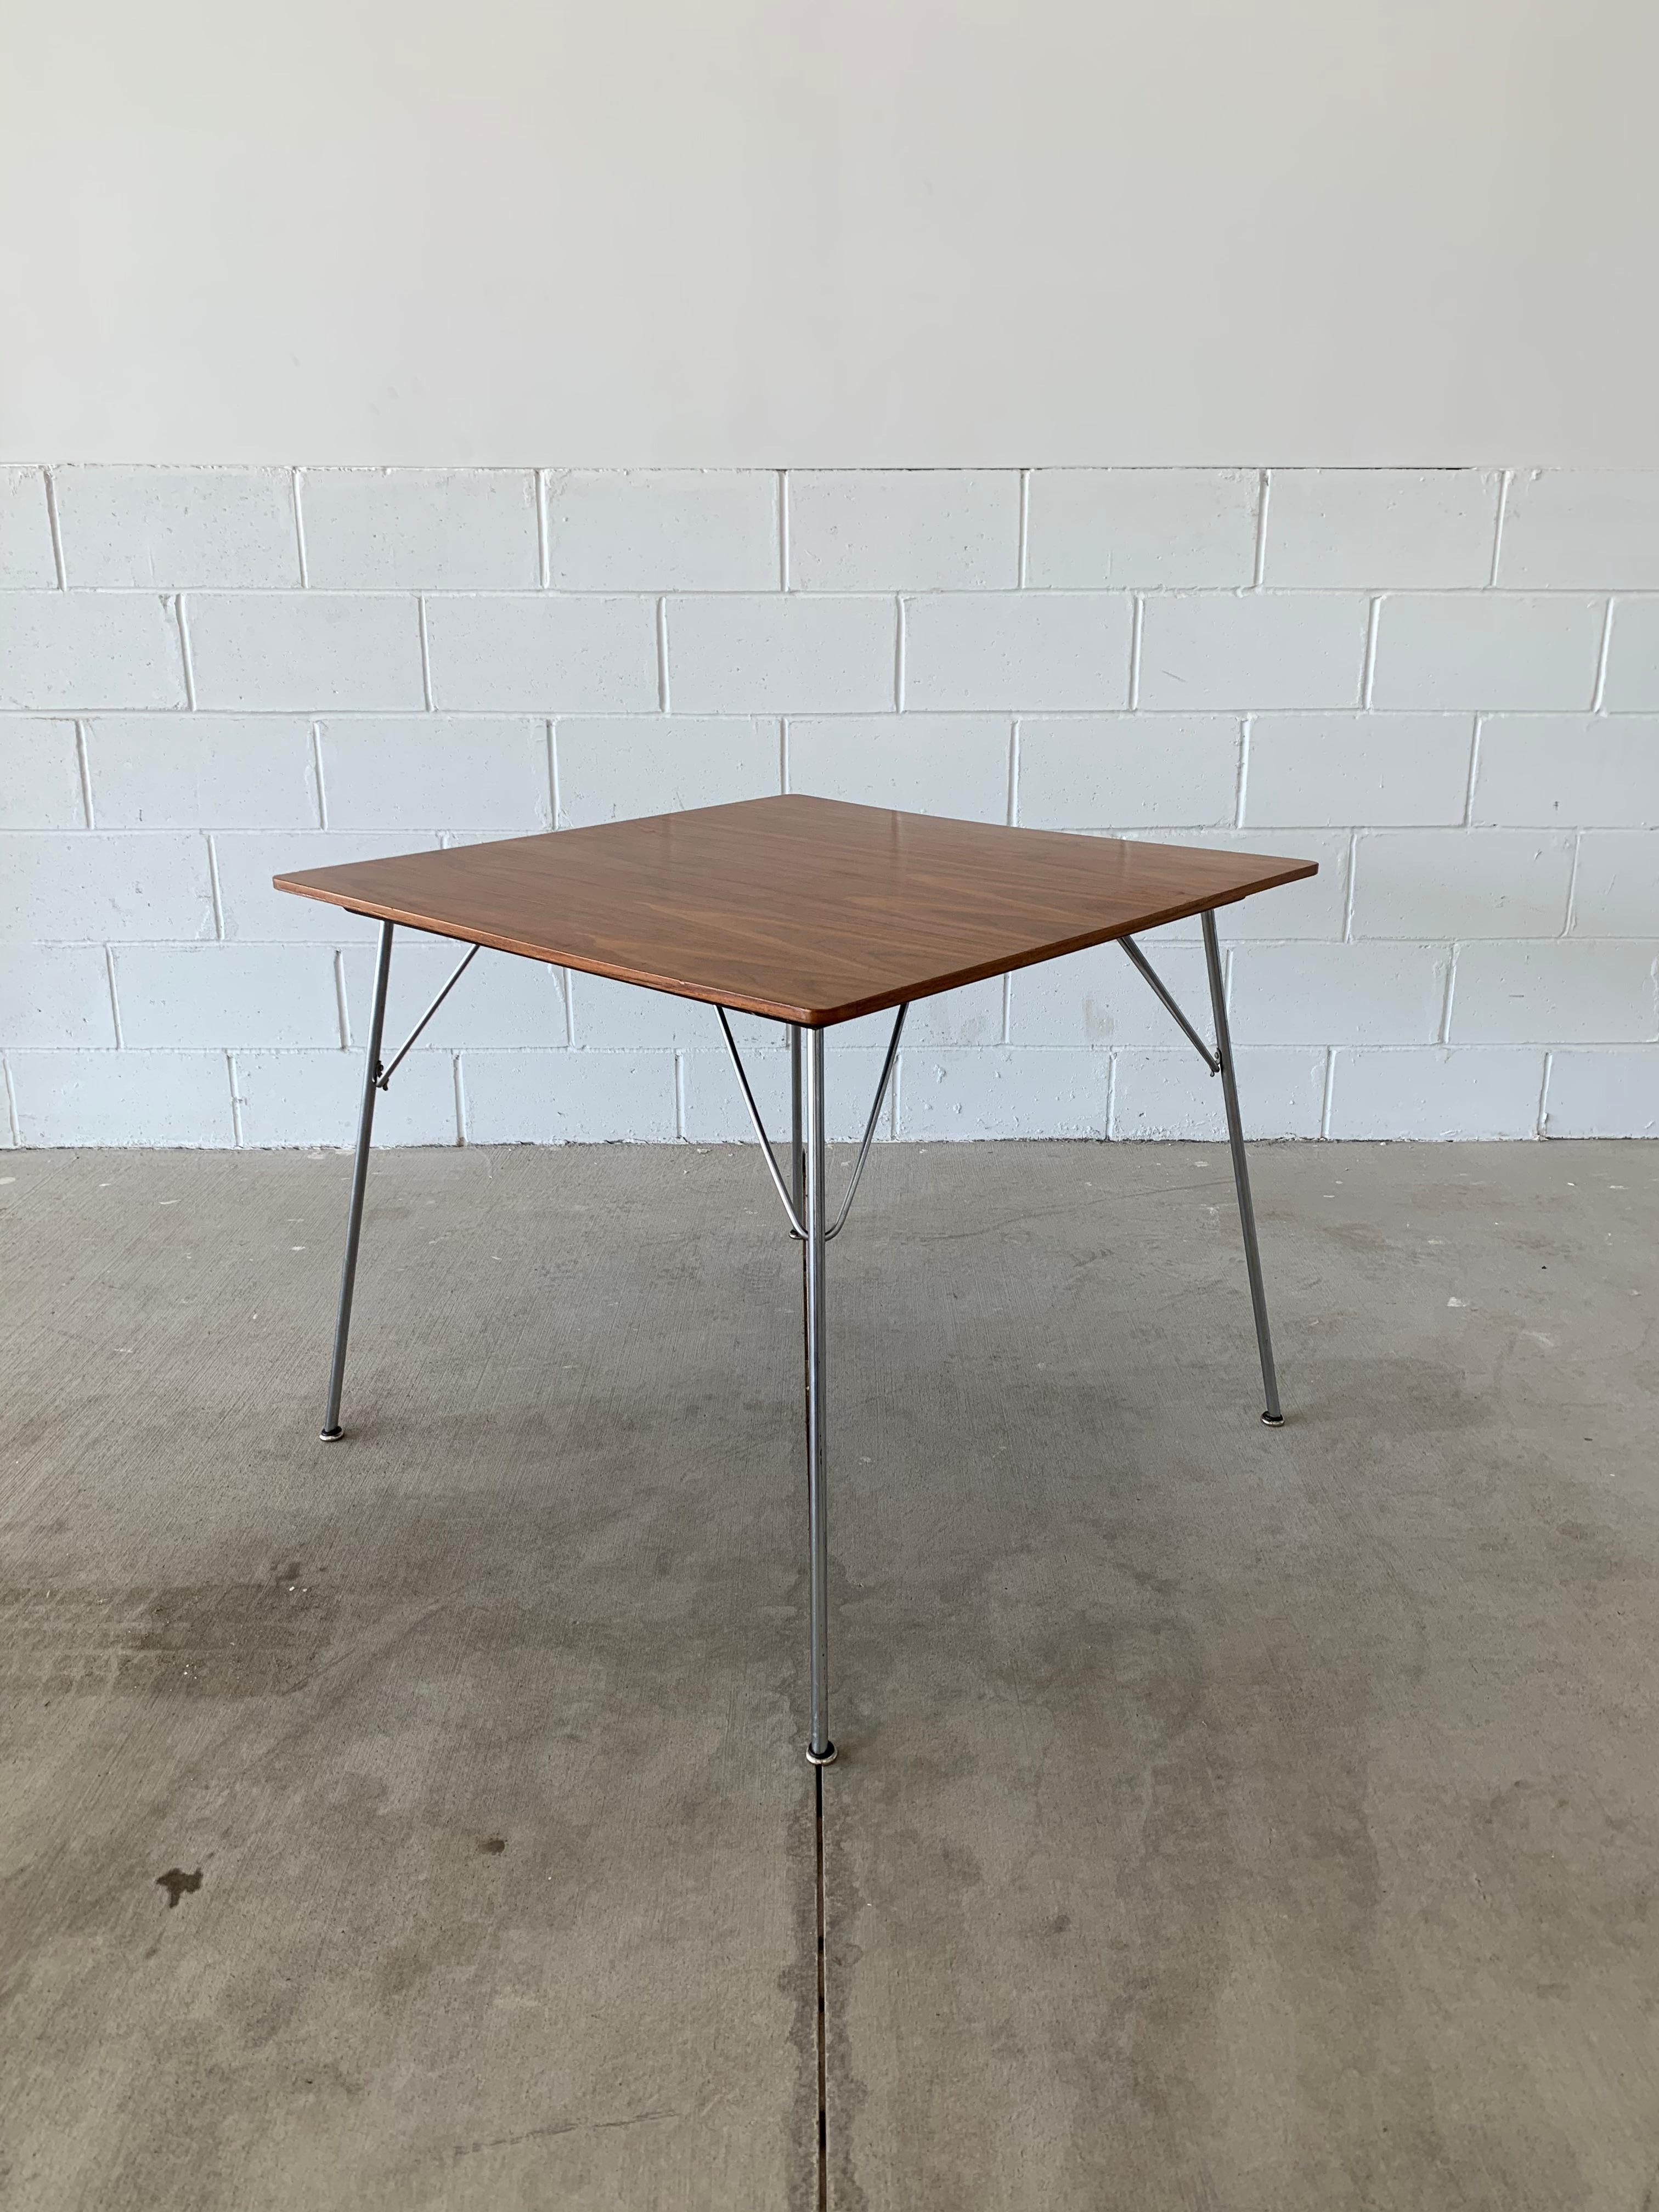 Cette magnifique table Vintage By By par Ray et Charles Eames est un ajout magnifique à toute maison ou bureau. Fabriqué par Herman Miller, il est constitué d'un plateau en noyer, d'un dessous peint en noir et de pieds en métal poli avec les 